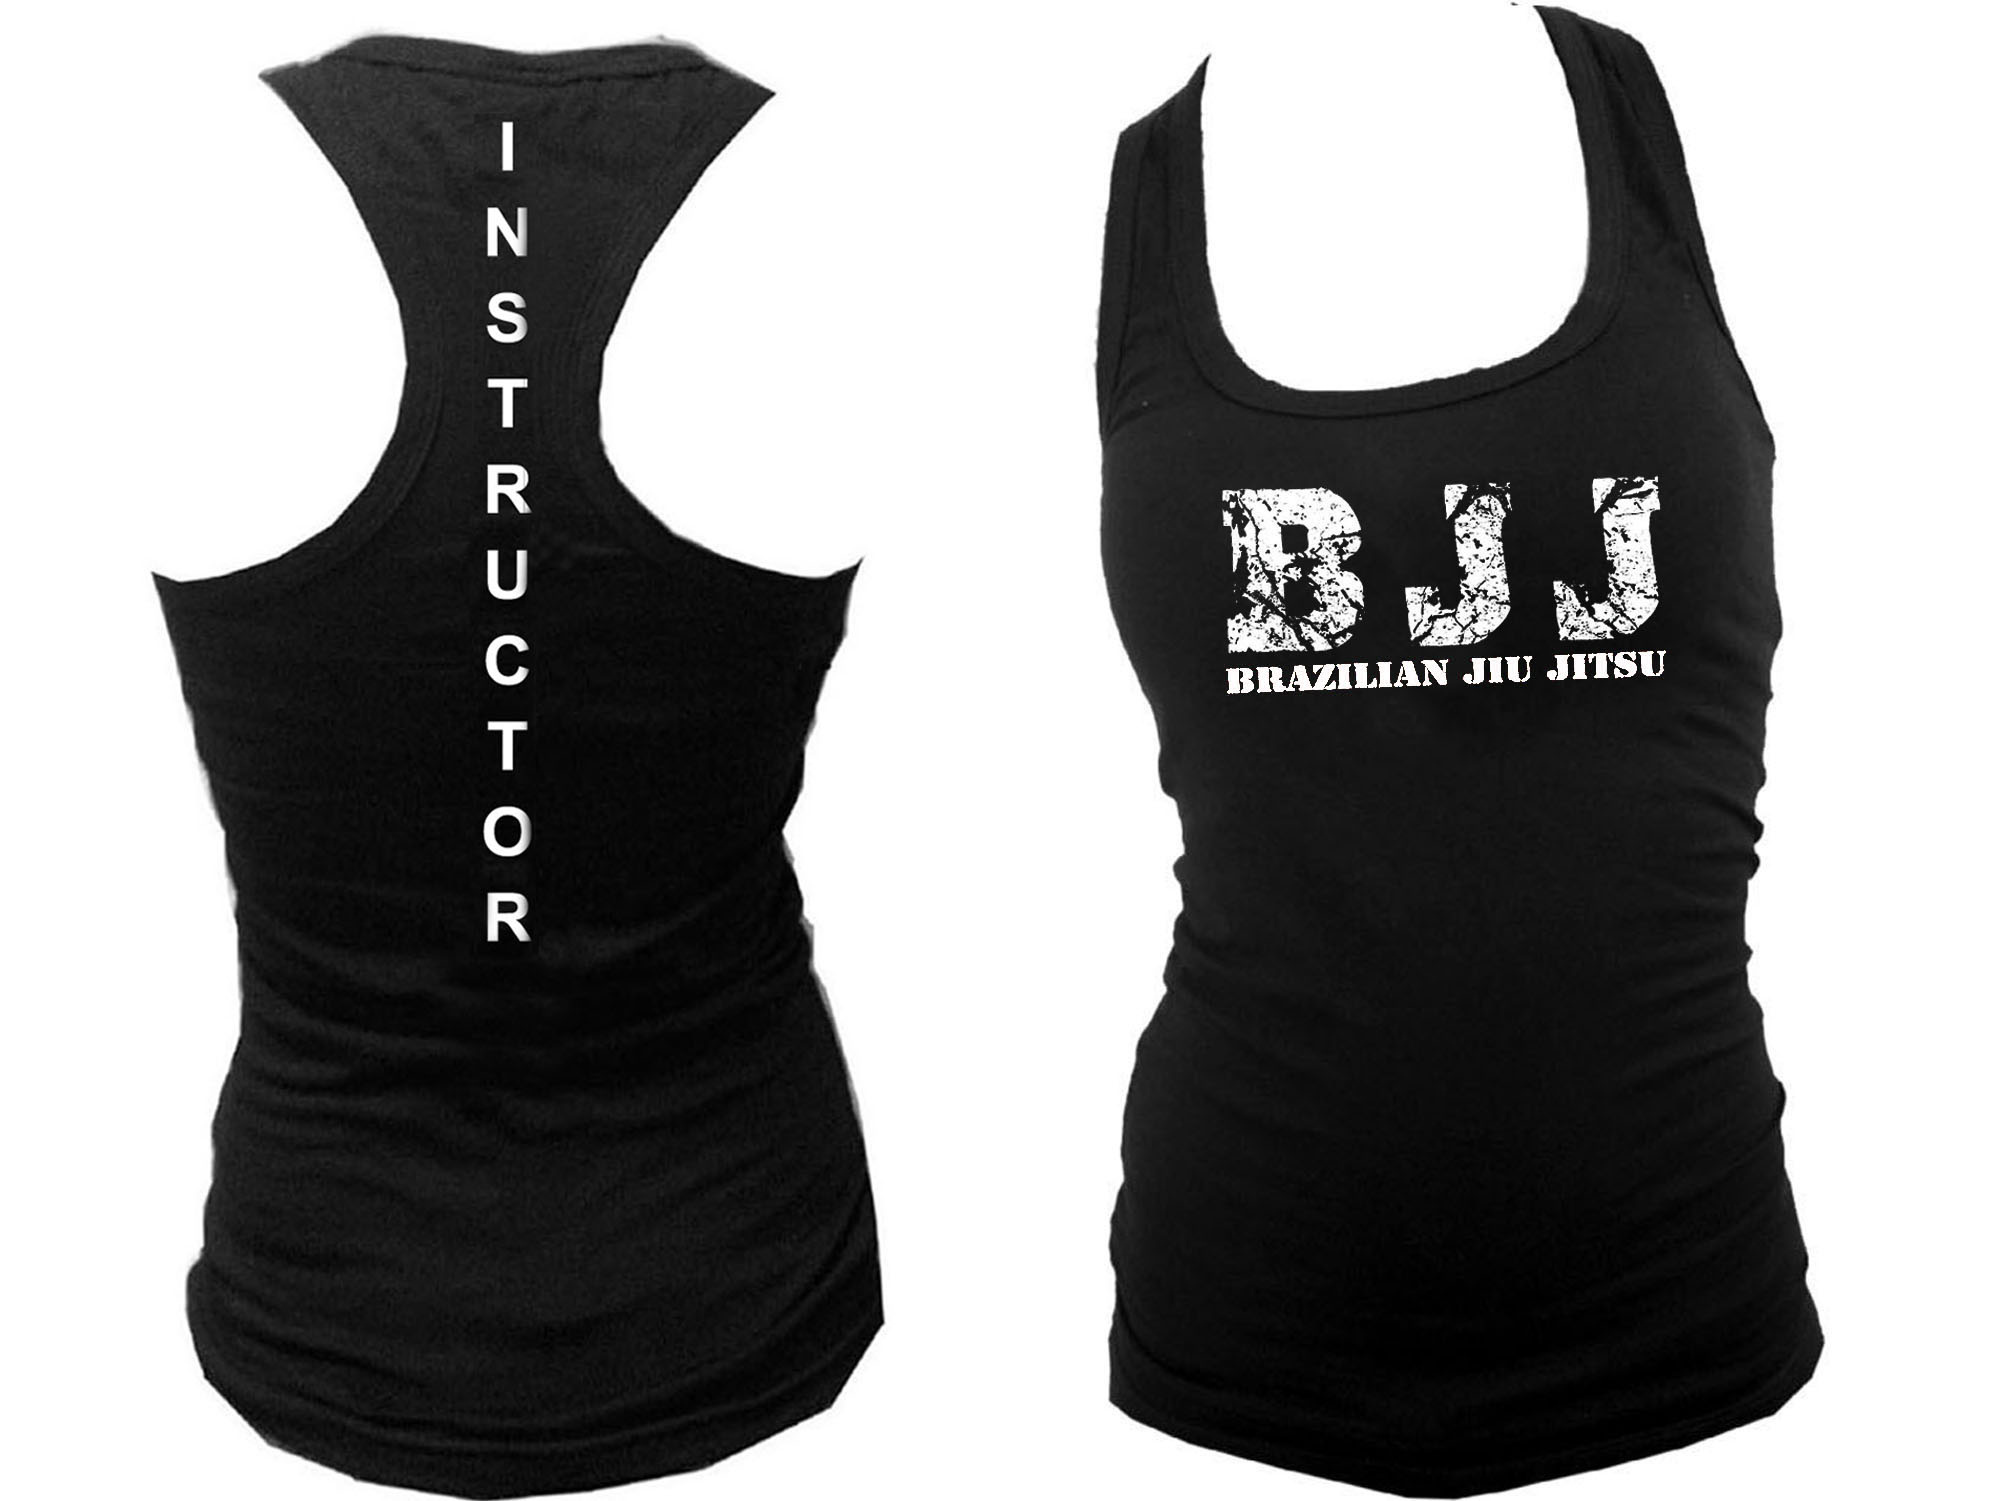 Brazilian jiu jitsu Instructor BJJ women or teens tank top M/L/XL